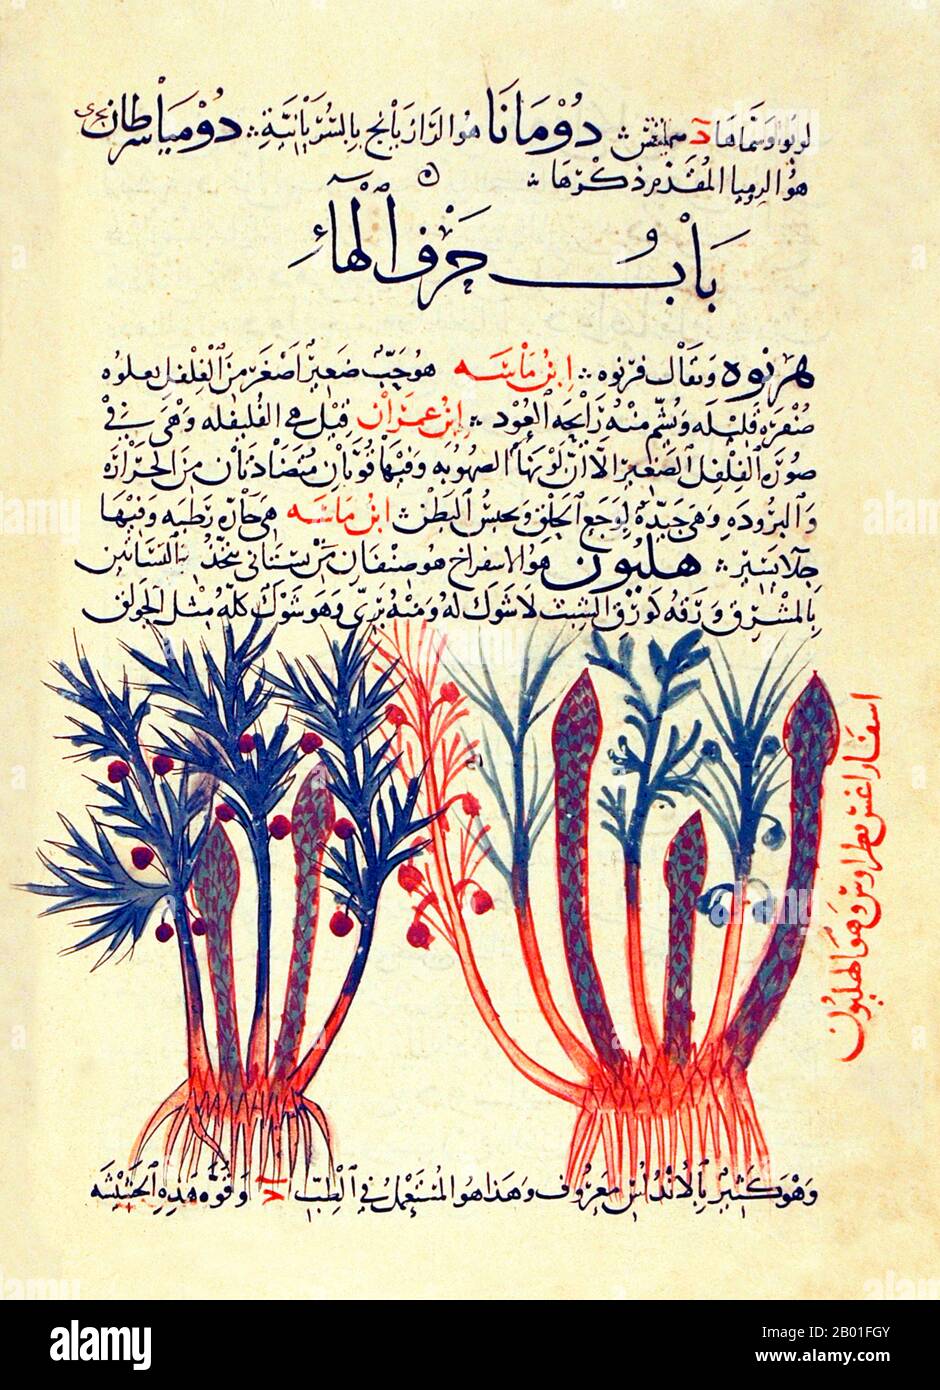 Spagna/Andalusia: Due tipi di asparagi. Foglio arabo illuminato da Abu Ja 'Herball' di far al-Ghafiqi, 12th ° secolo. Al-Ghafiqi, secondo uno storico della medicina araba del XIII secolo, era il più grande savant delle piante medicinali, i loro nomi e le loro proprietà, e il suo lavoro non aveva eguali in questo campo. Questo punto di vista fu poi confermato da Max Meyerhof (1945), l'eminente storico della medicina islamica, che affermò che al-Ghafiqi era senza dubbio il più grande botanico e farmacologo del periodo islamico. Si salutò da Ghafiq, vicino a Cordoba, nella penisola iberica meridionale. Foto Stock